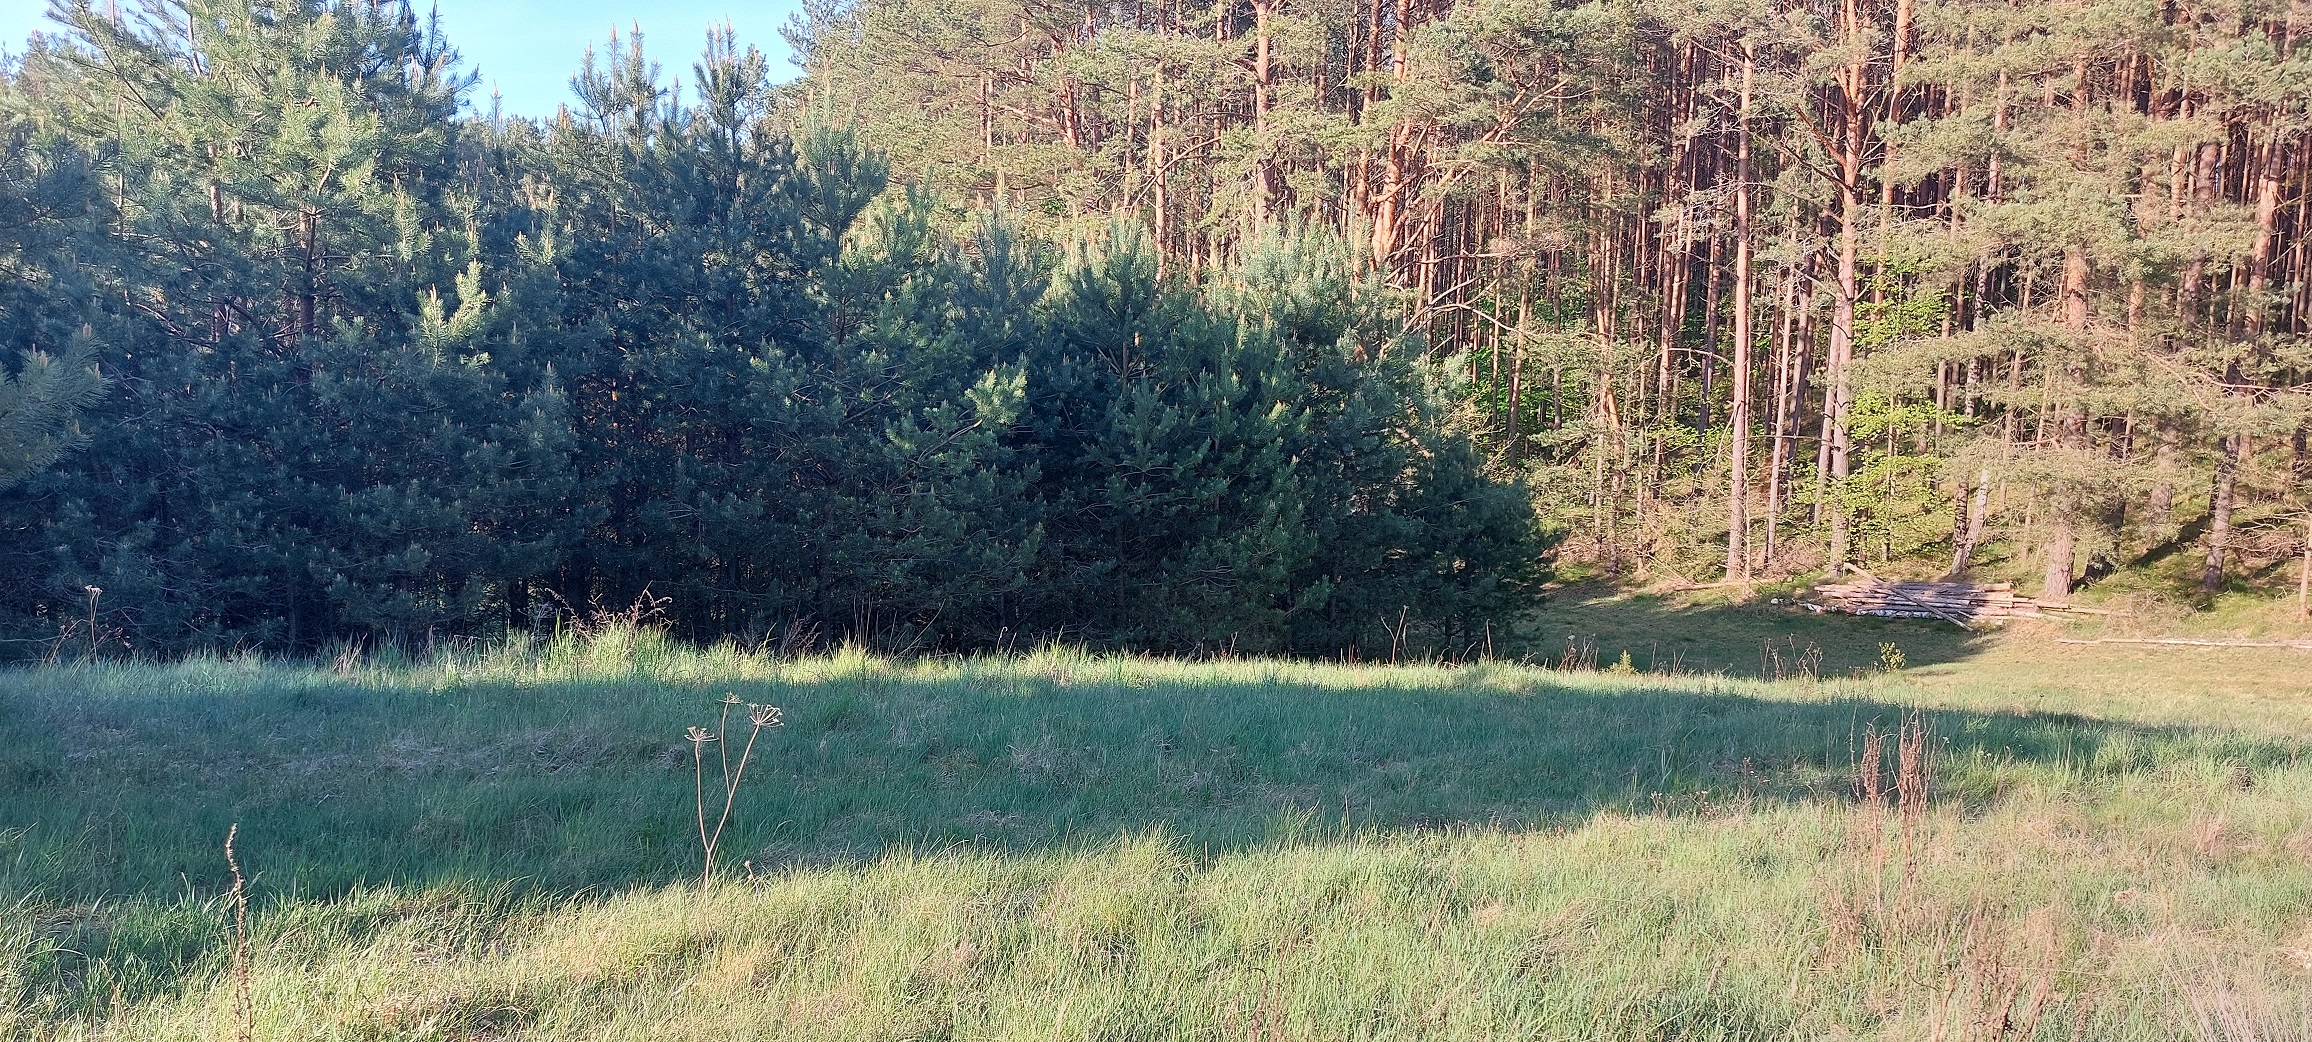 Orle duża działka  przy lesie, niedaleko rzeki